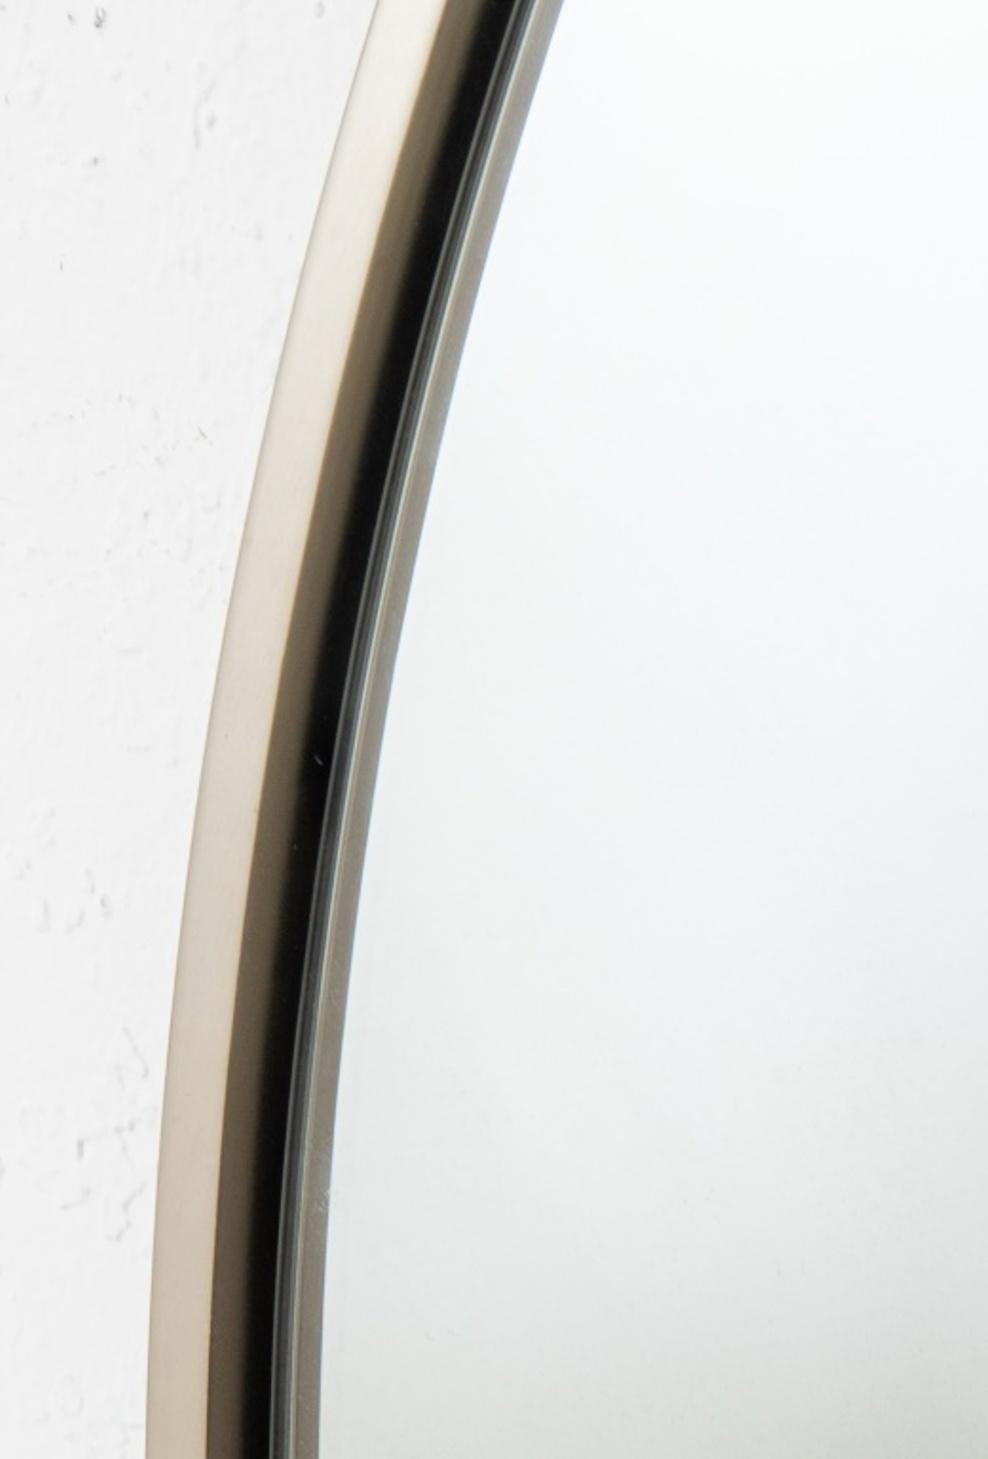 Miroir rond moderne avec cadre en acier brossé. Diamètre de 47,5